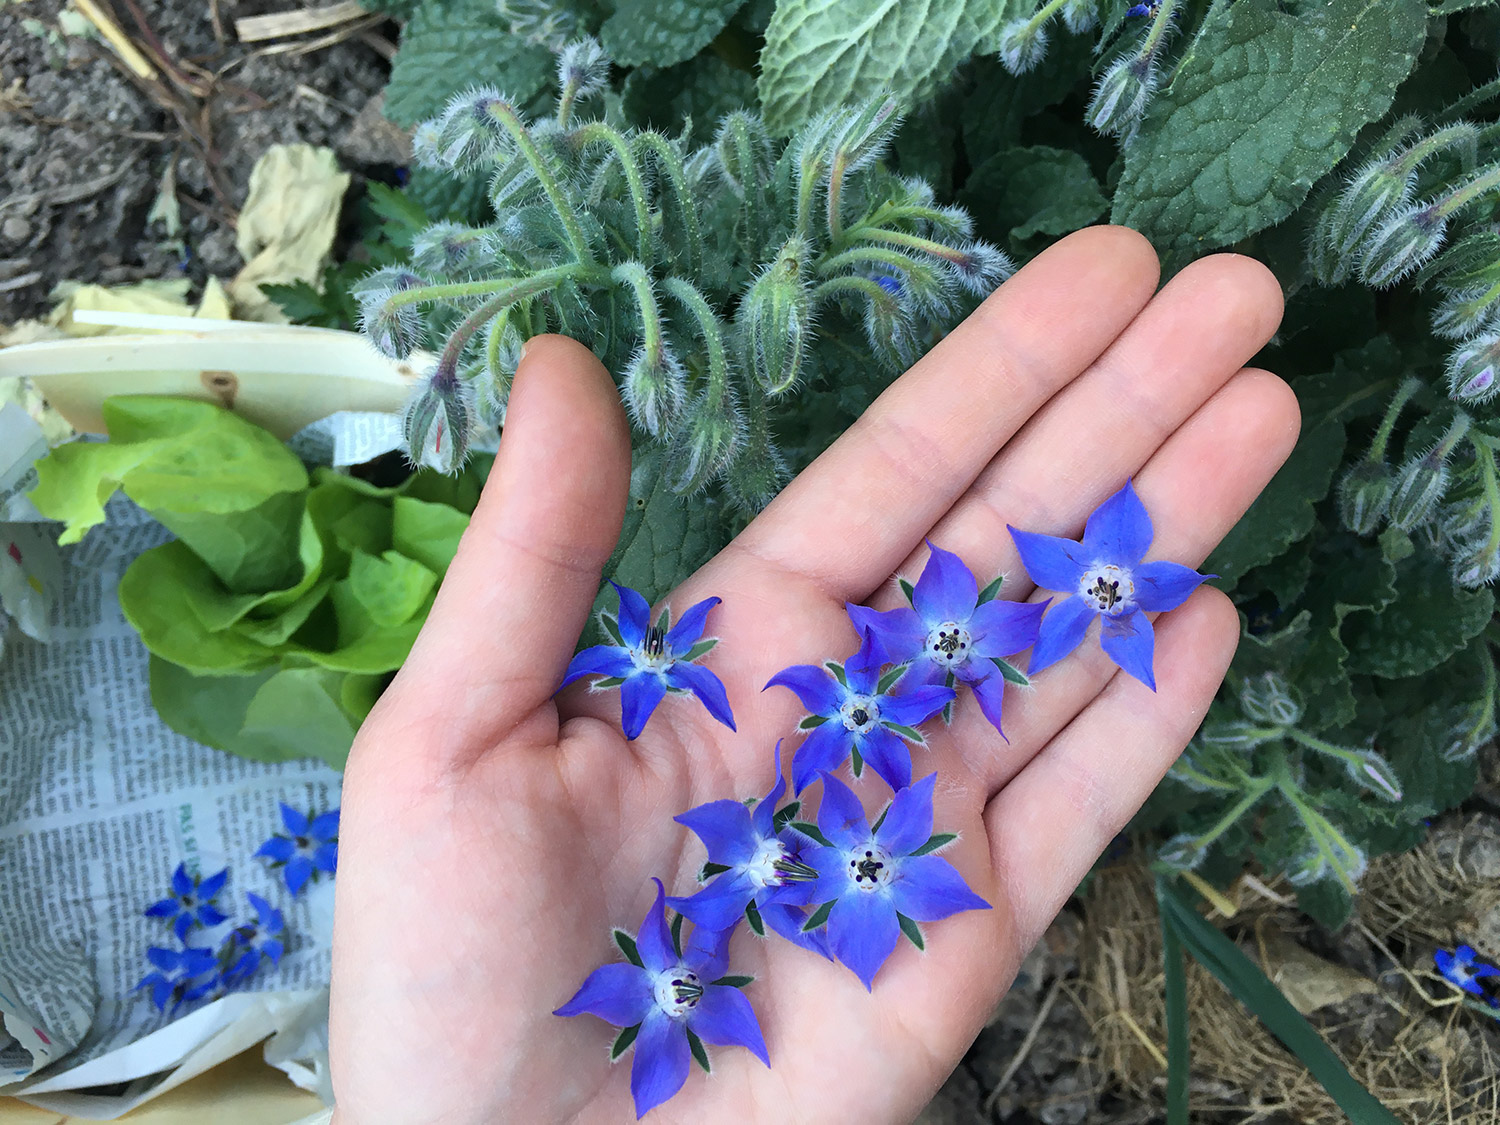 Fleurs bleu vif de bourrache dans la paume de la main, pendant la cueillette